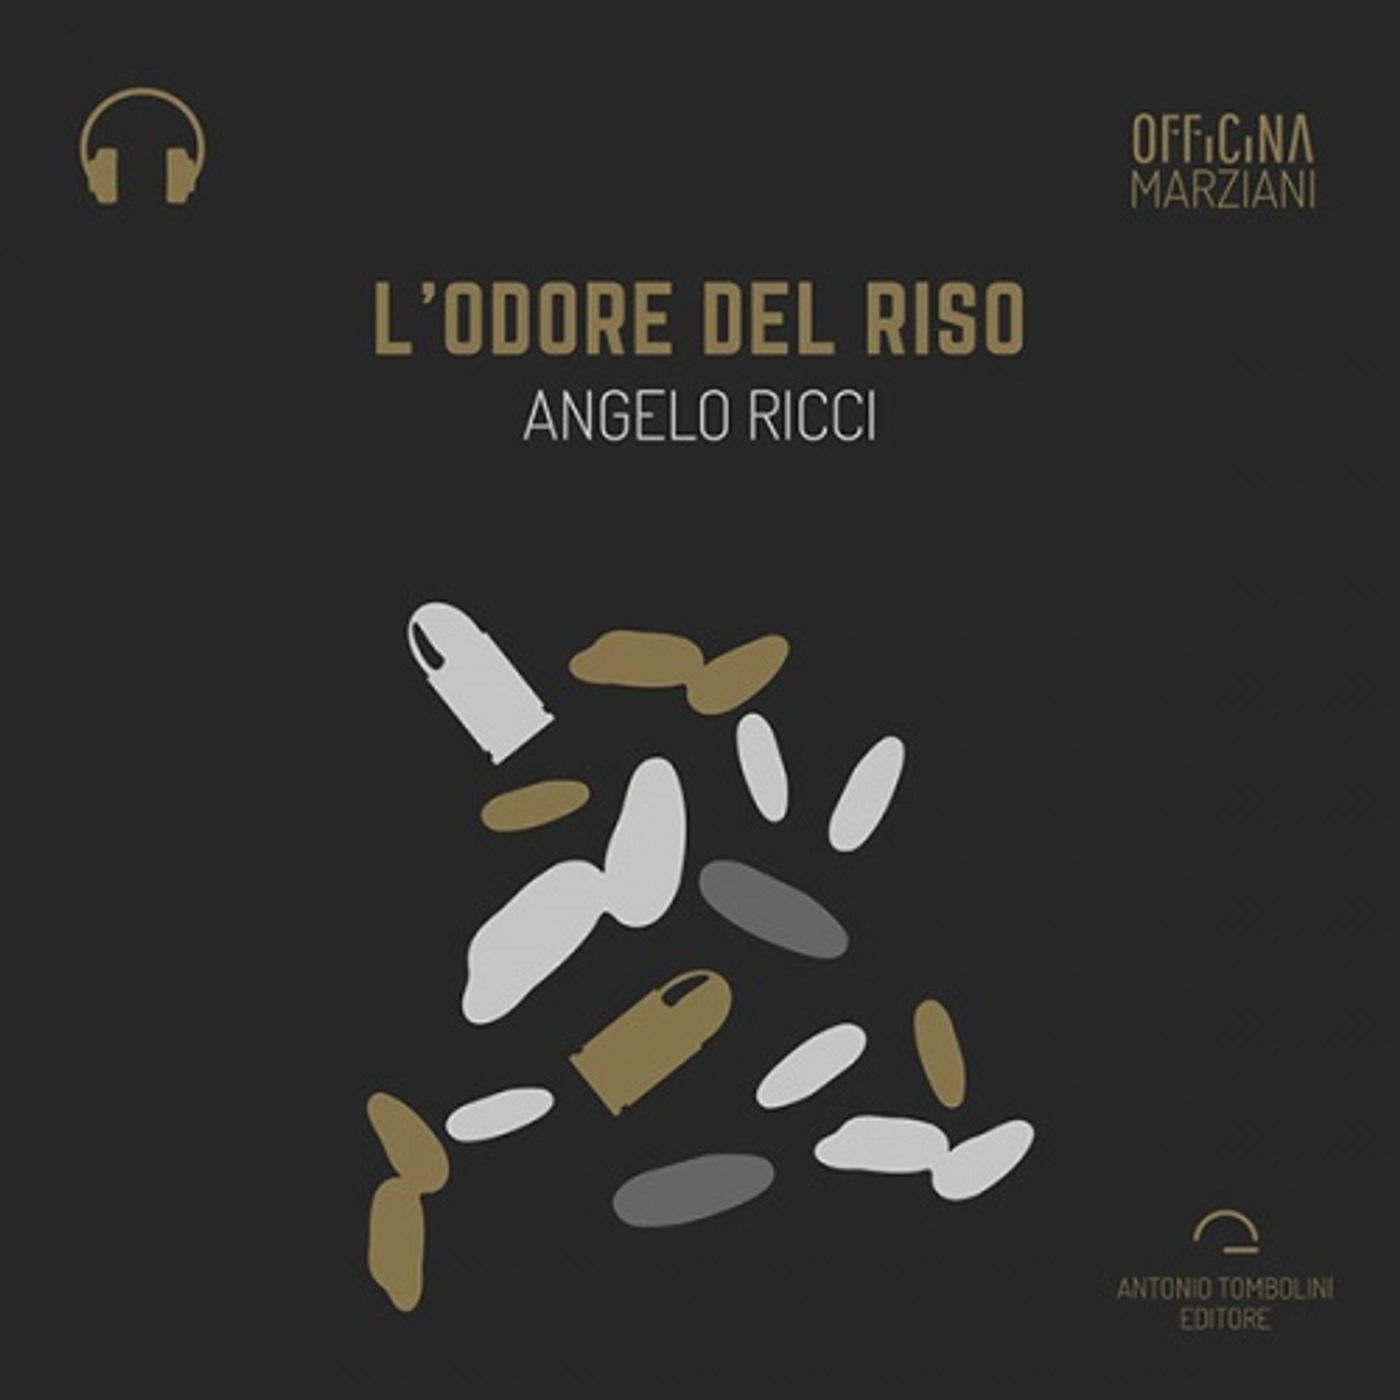 L'odore del riso di Angelo Ricci - Anteprima audio "Il Narratore"